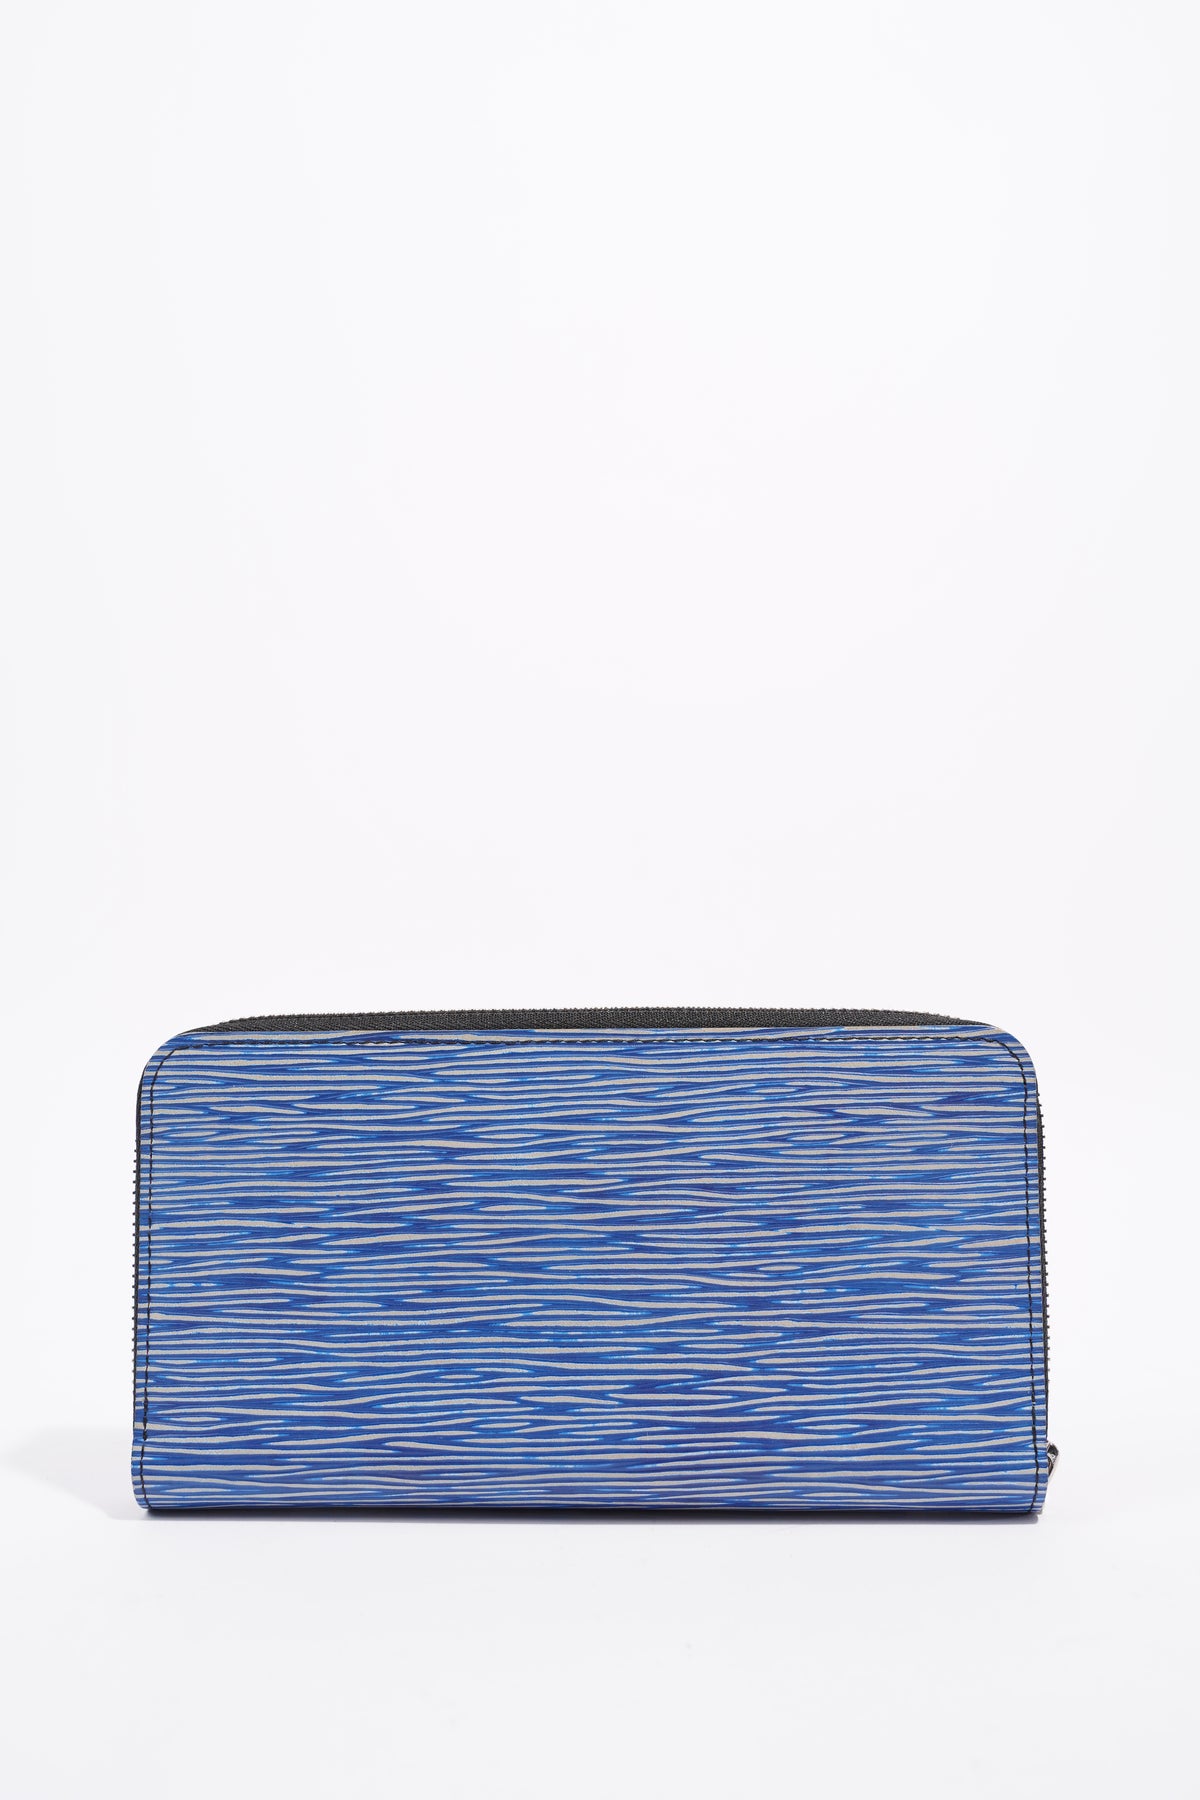 Louis Vuitton 2015 EPI Leather Zippy Wallet